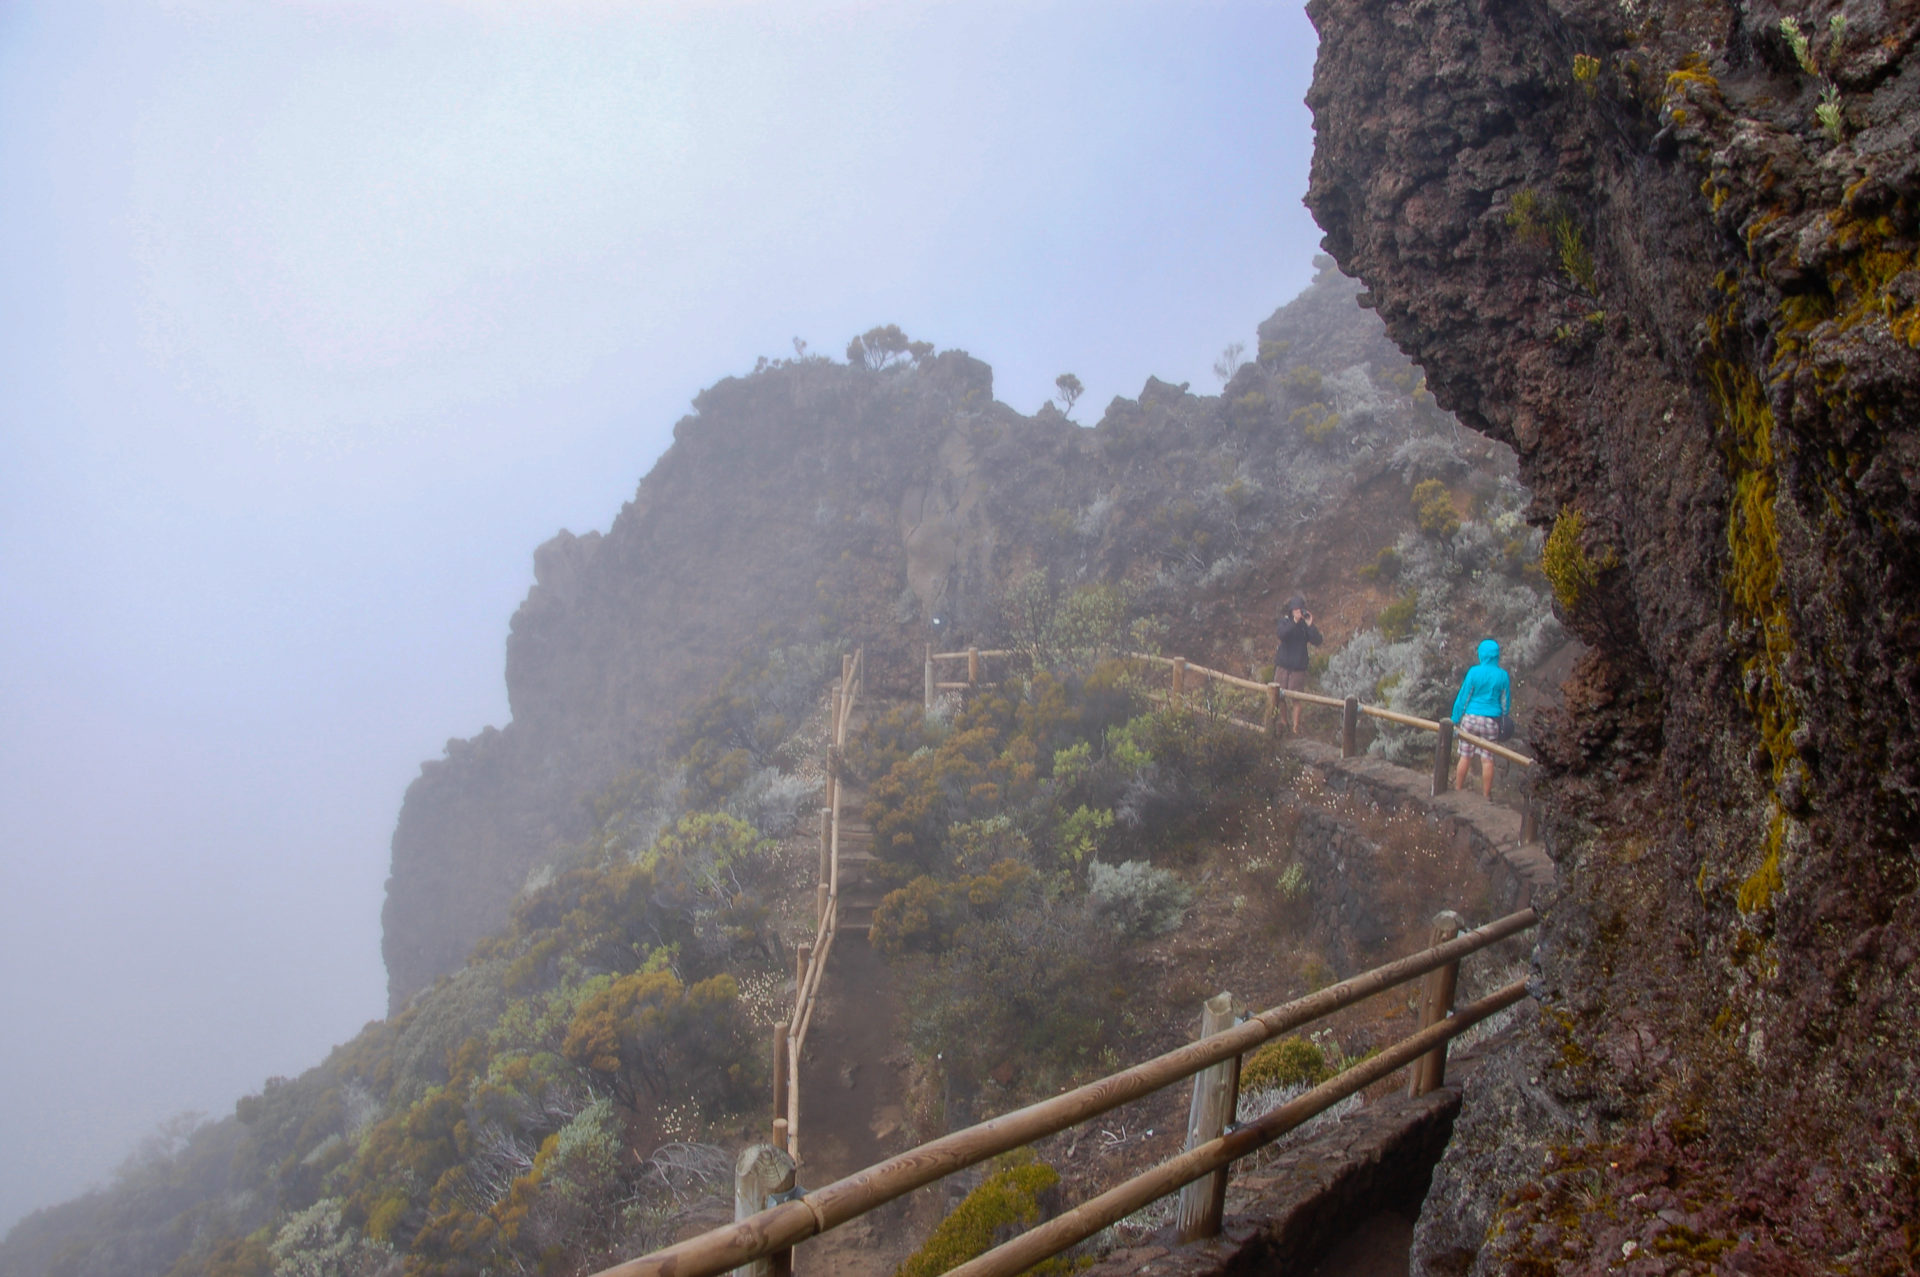 Wanderung im Nebel während der Rundreise durch La Réunion